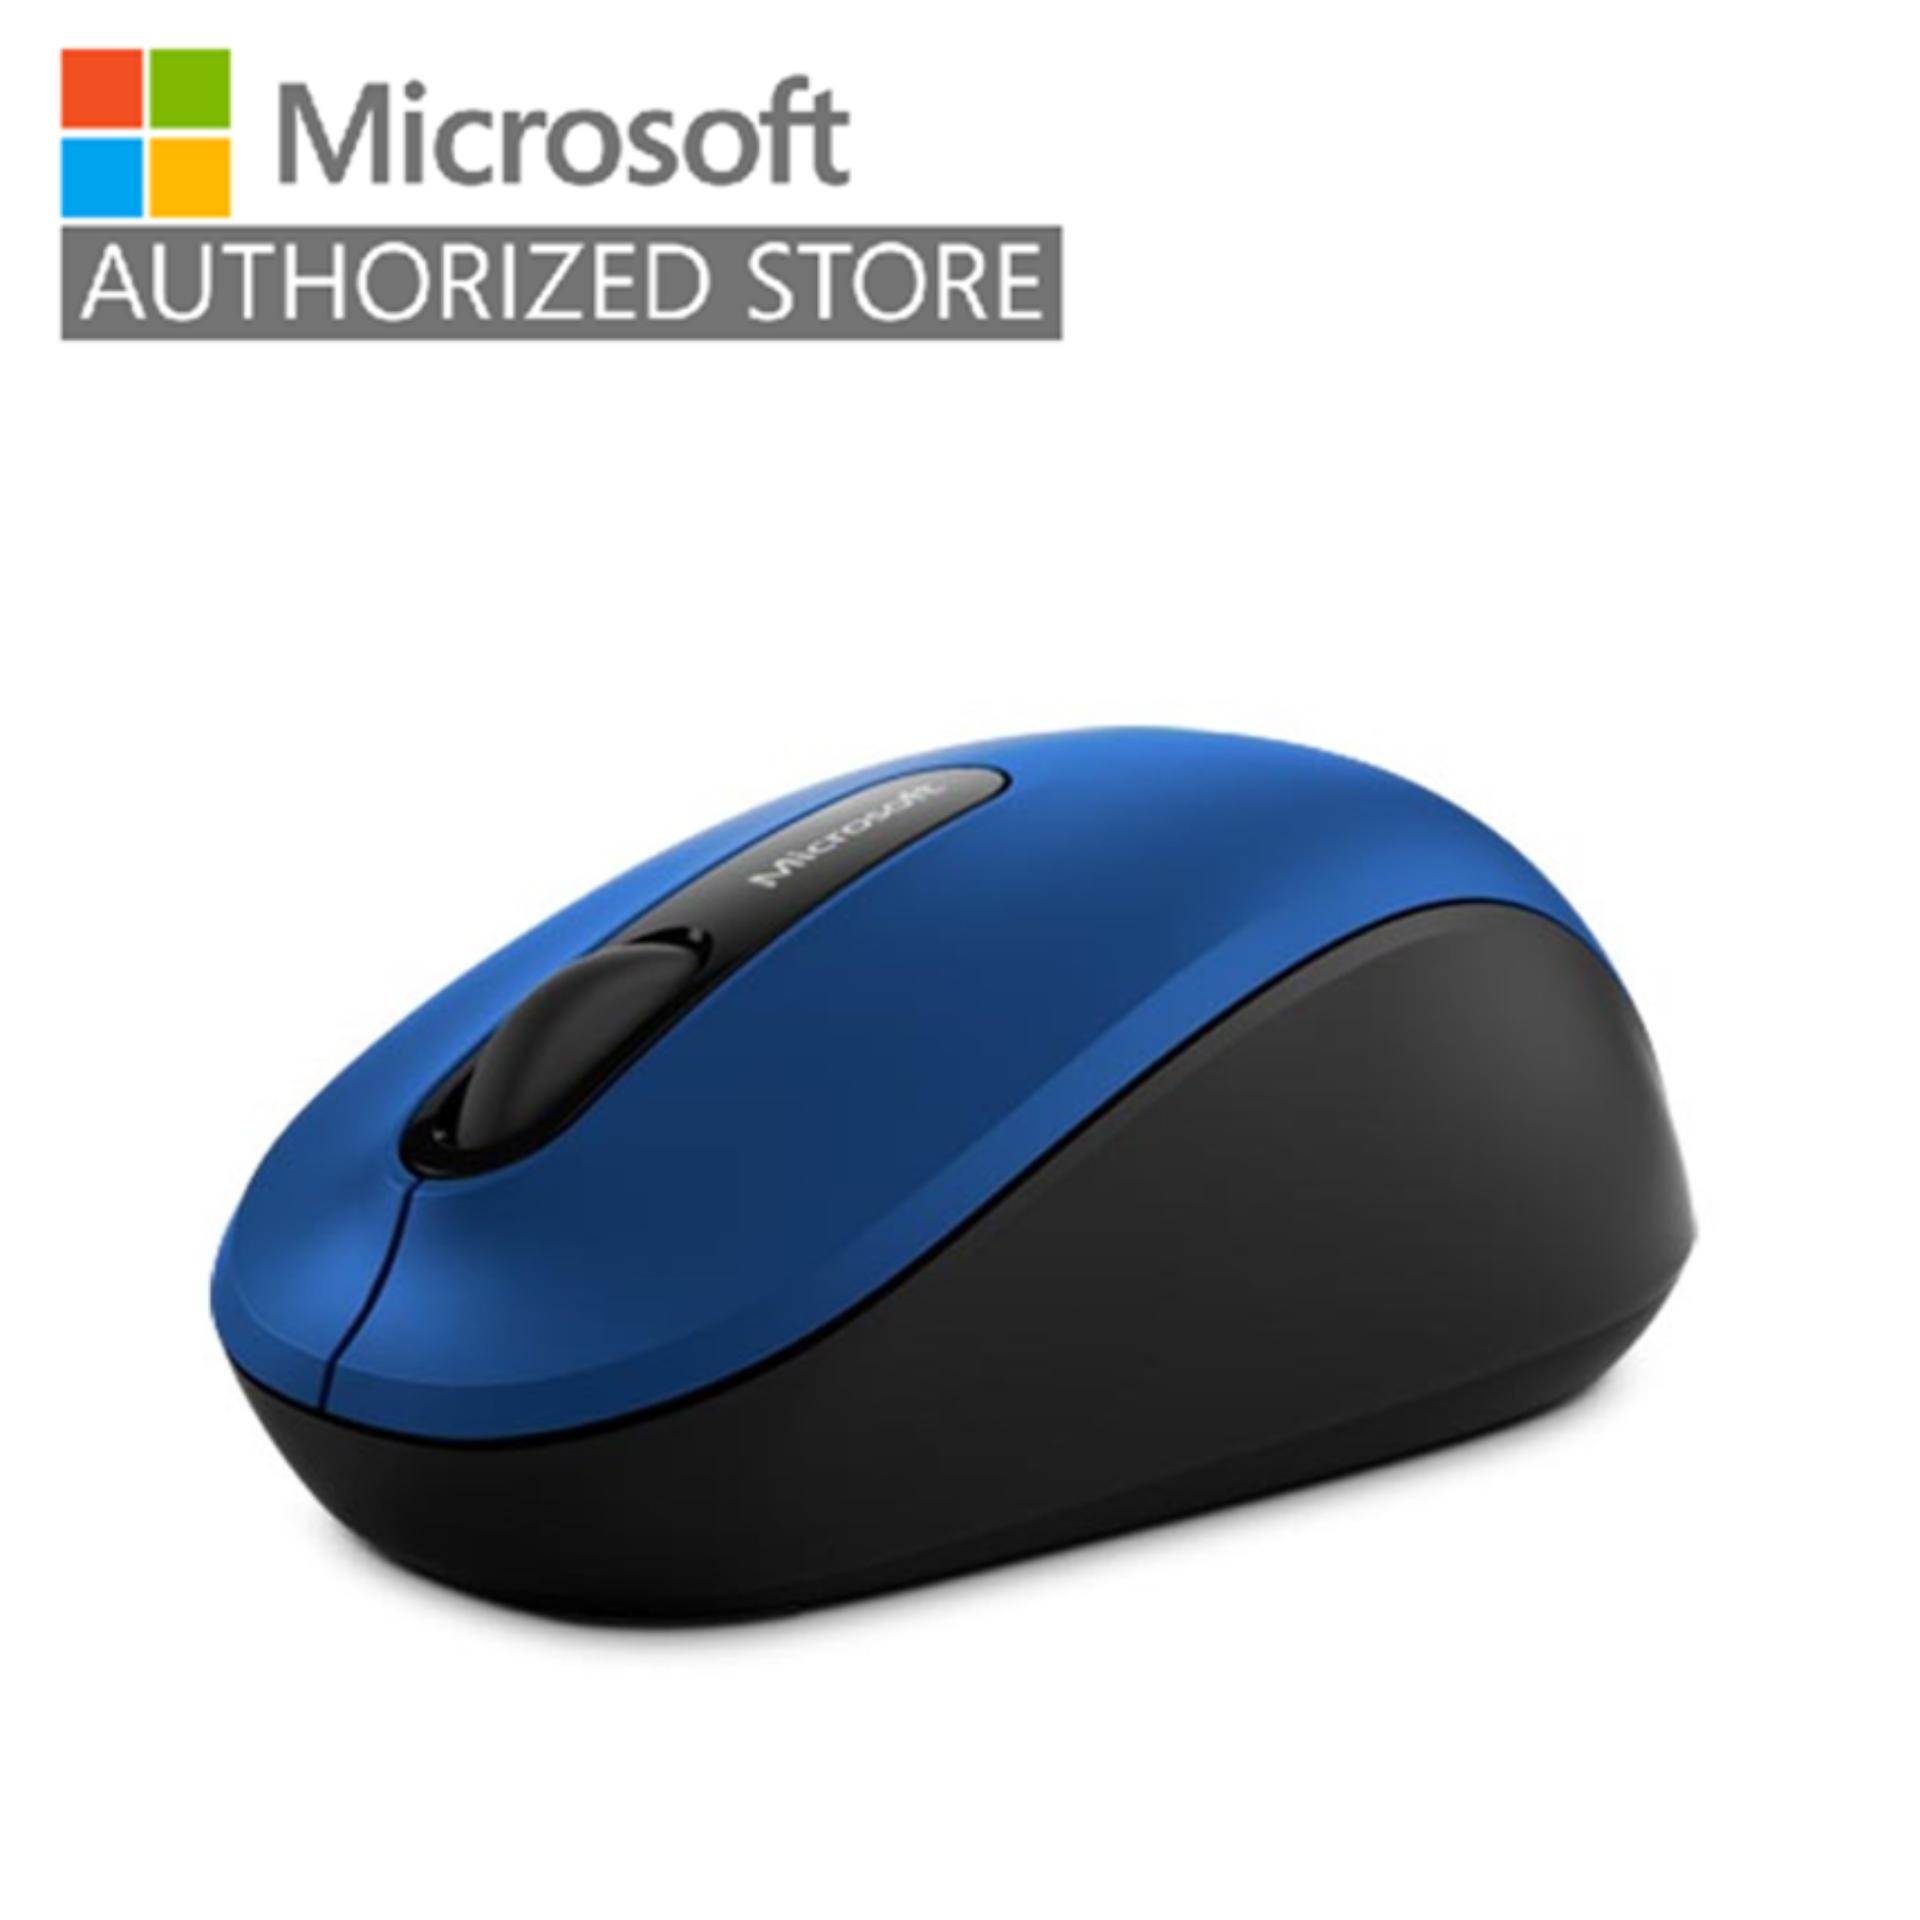 [เมาส์บลูทูธ] Microsoft Bluetooth Mobile Mouse3600 TH APAC Black McsAcc / เมาส์มือซ้าย-ขวา, เมาส์สีดำ, ใช้ได้ทุกพื้นผิว (ยกเว้นกระจก)